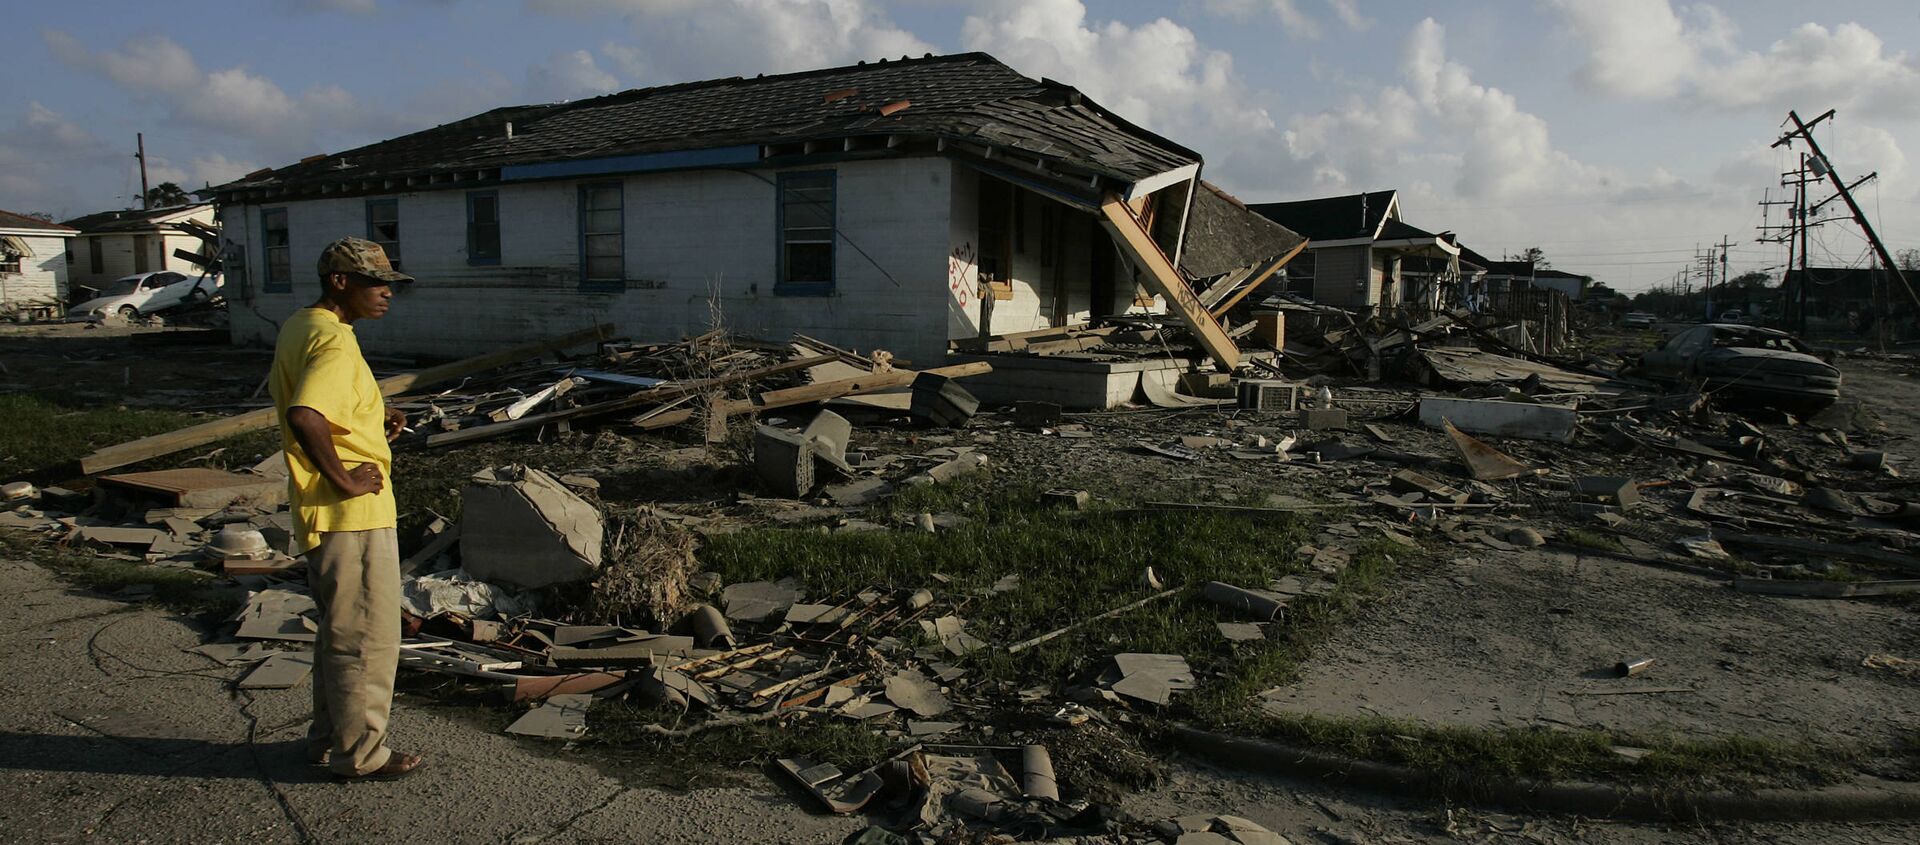 Un hombre afroamericano examina su casa destruida en un barrio de Nueva Orleans - Sputnik Mundo, 1920, 29.08.2015